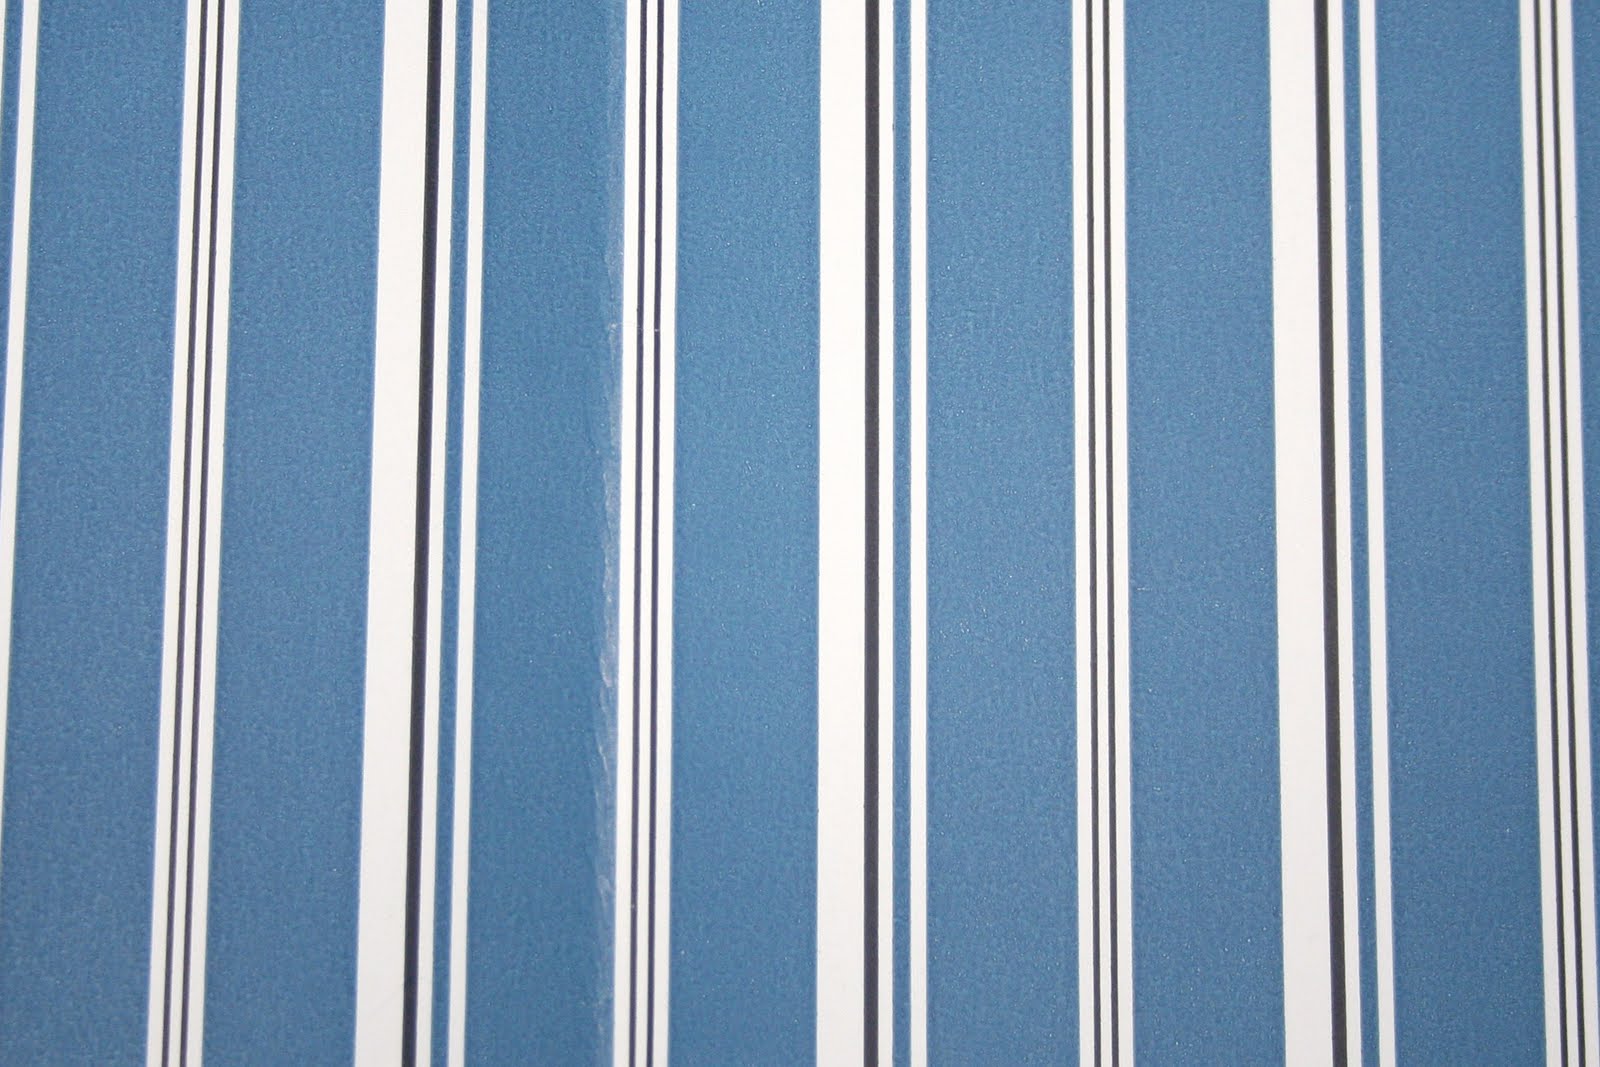 Ralph Lauren Wallpaper Laurelton Porcelain Blue This Is On Display